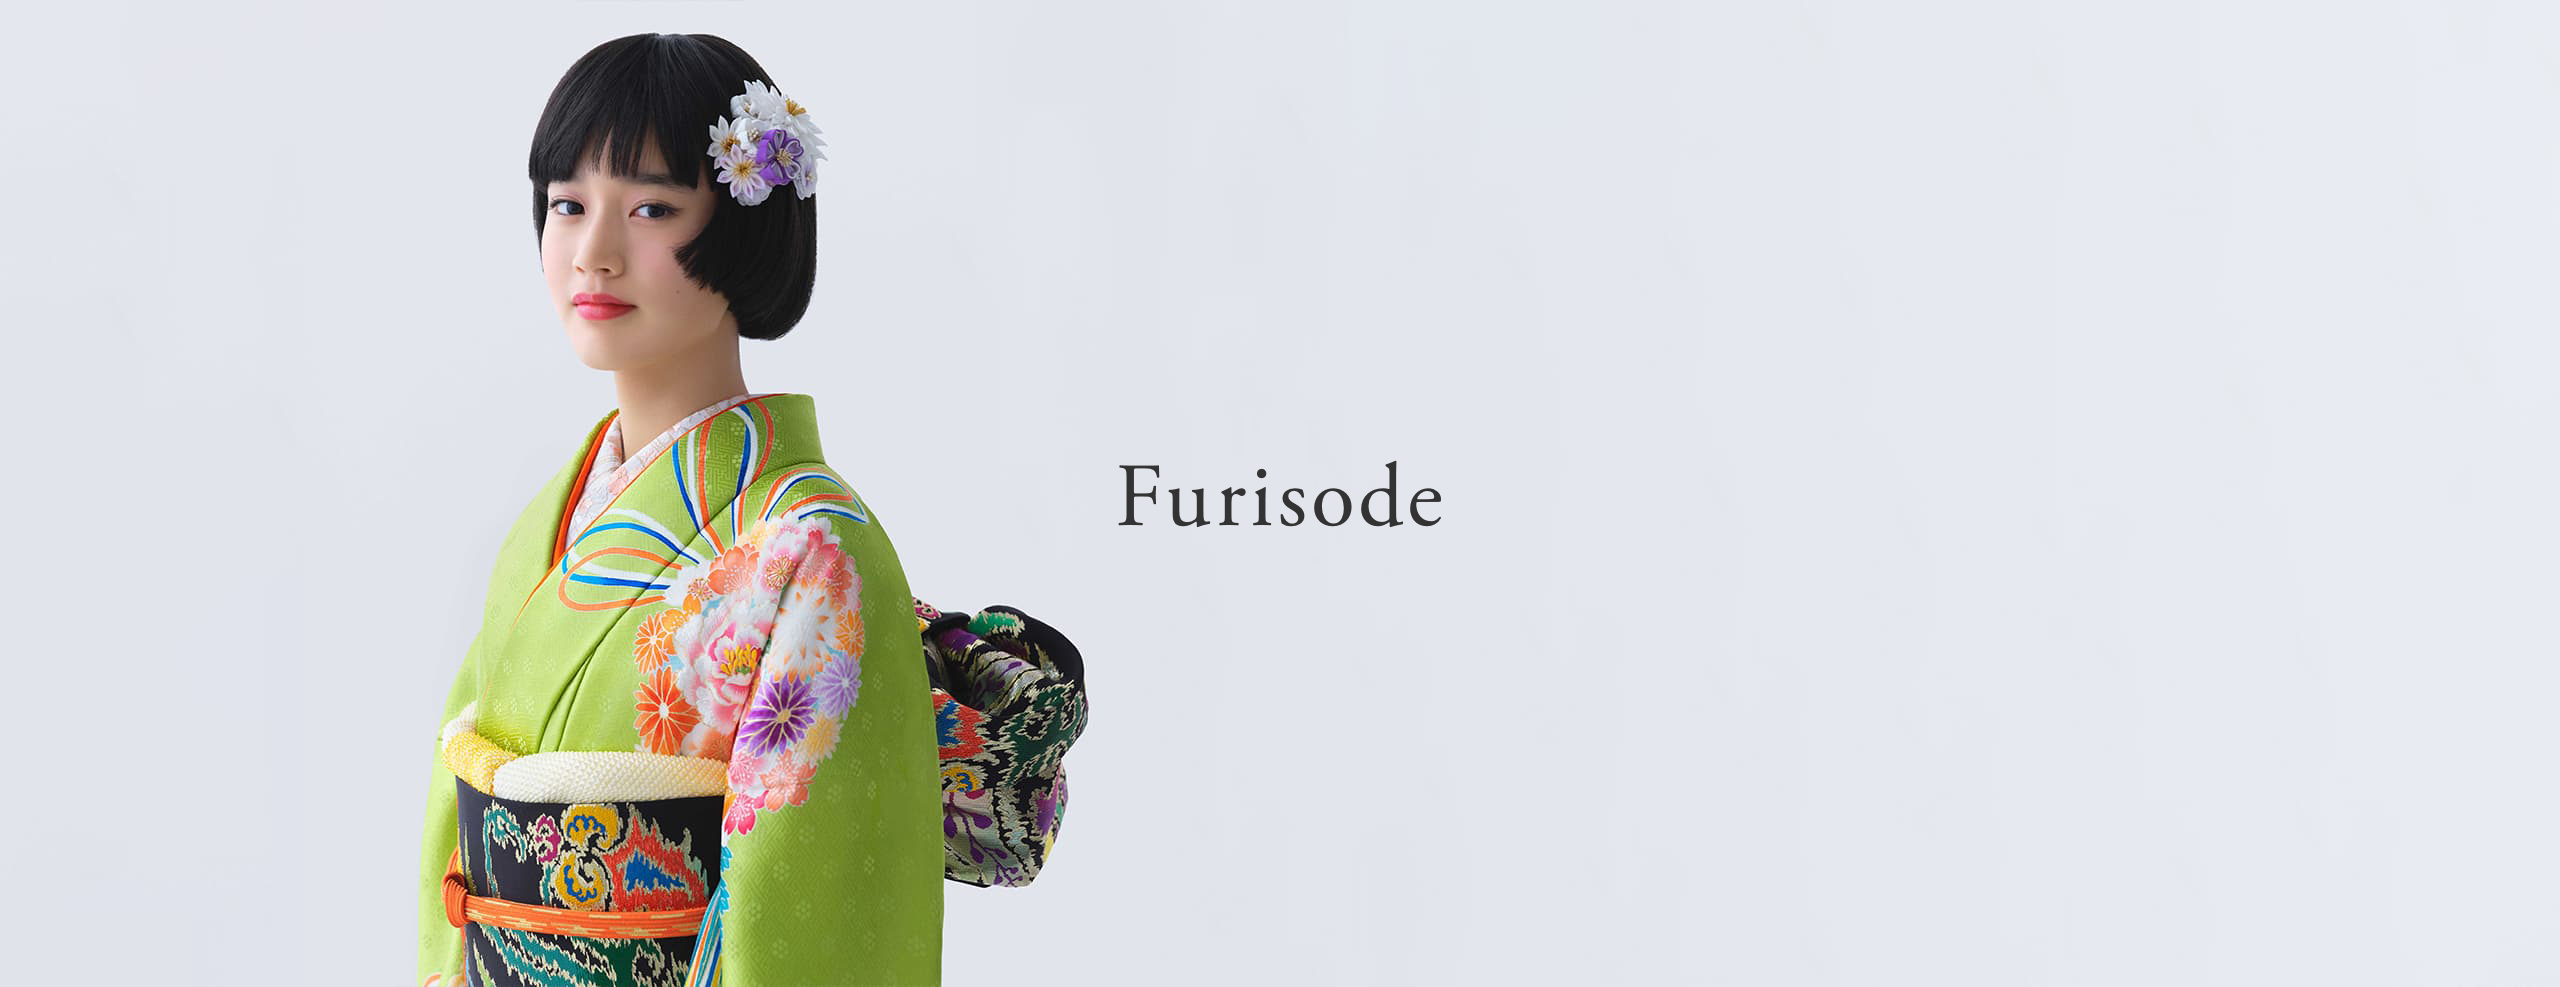 Furisode | Kimono - (English)